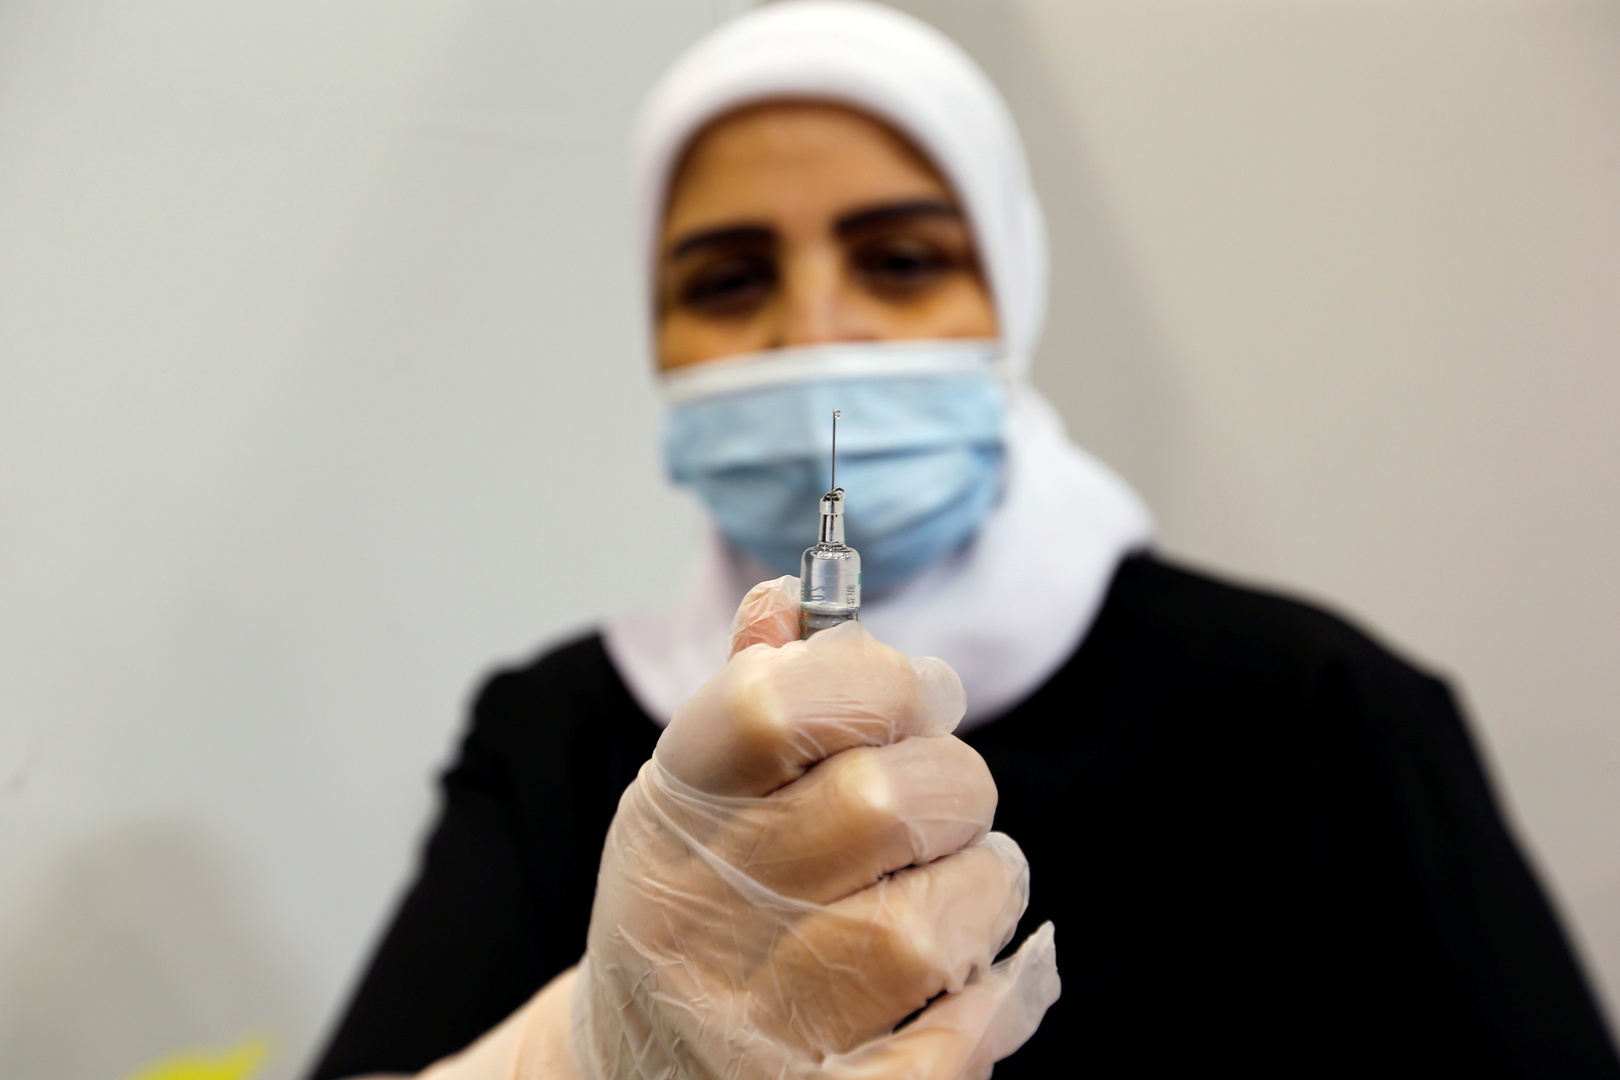 البحرين تسجل أعلى حصيلة إصابات بفيروس كورونا منذ أكتوبر الماضي